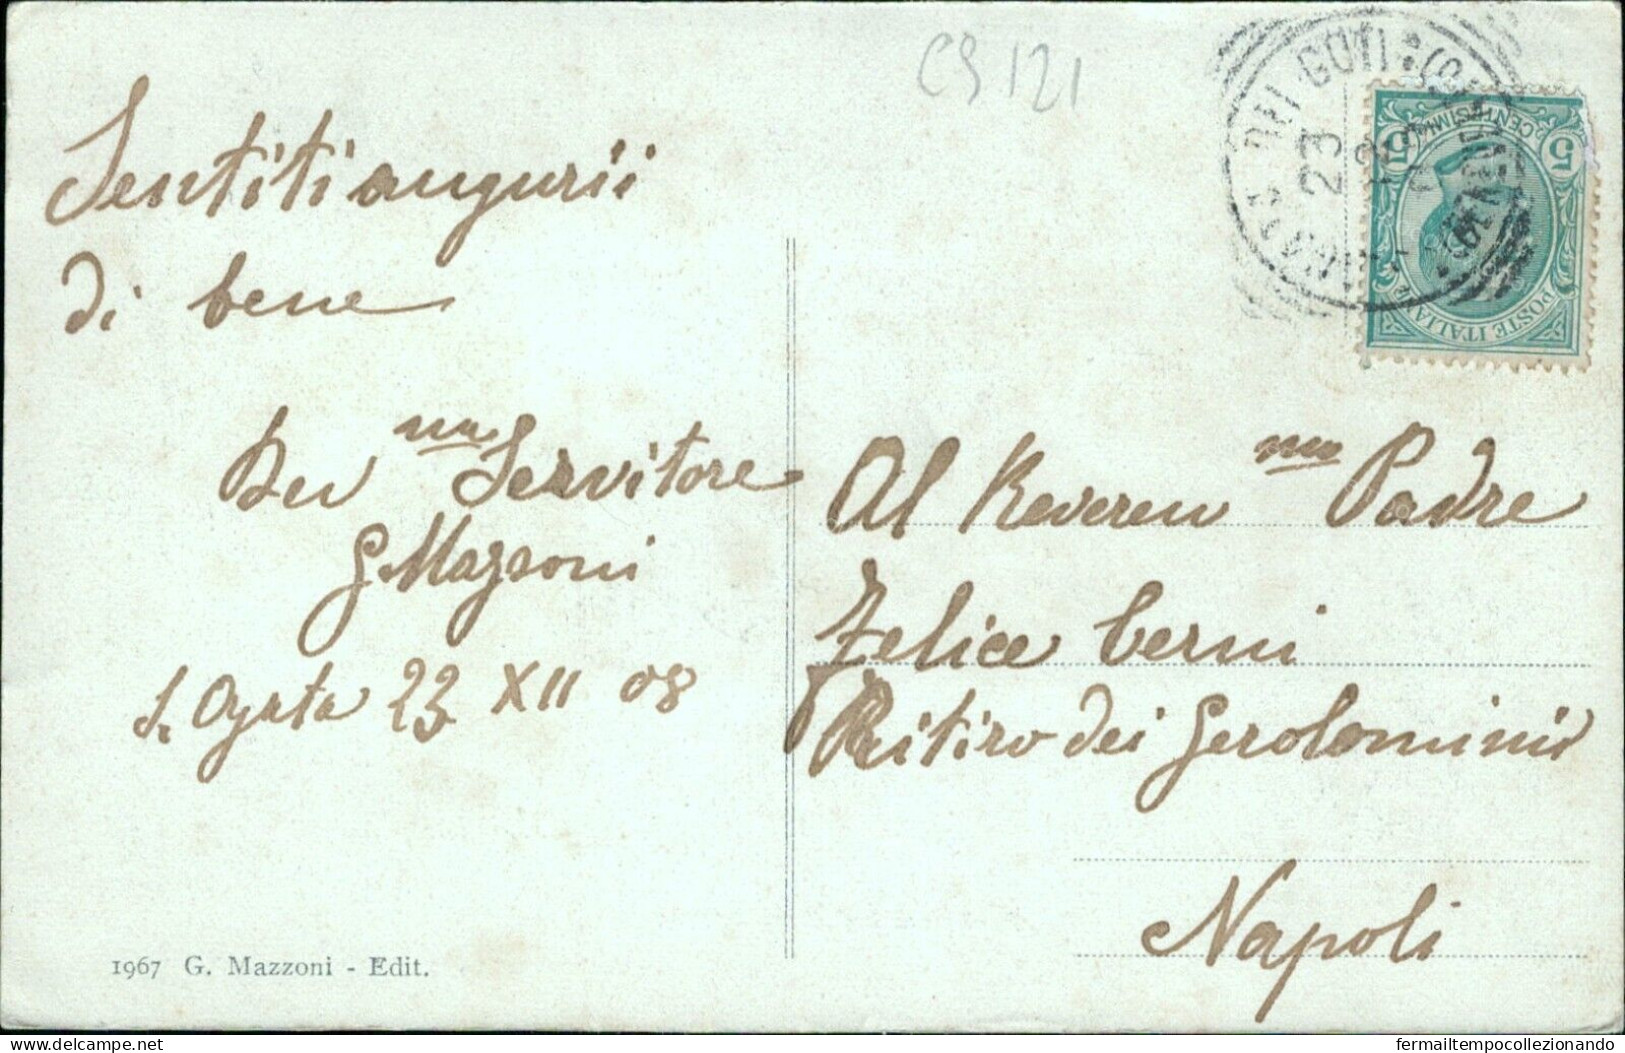 Cs121 Cartolina S.agata De Goti Viale Provincia Di Benevento 1908 Bella! - Benevento